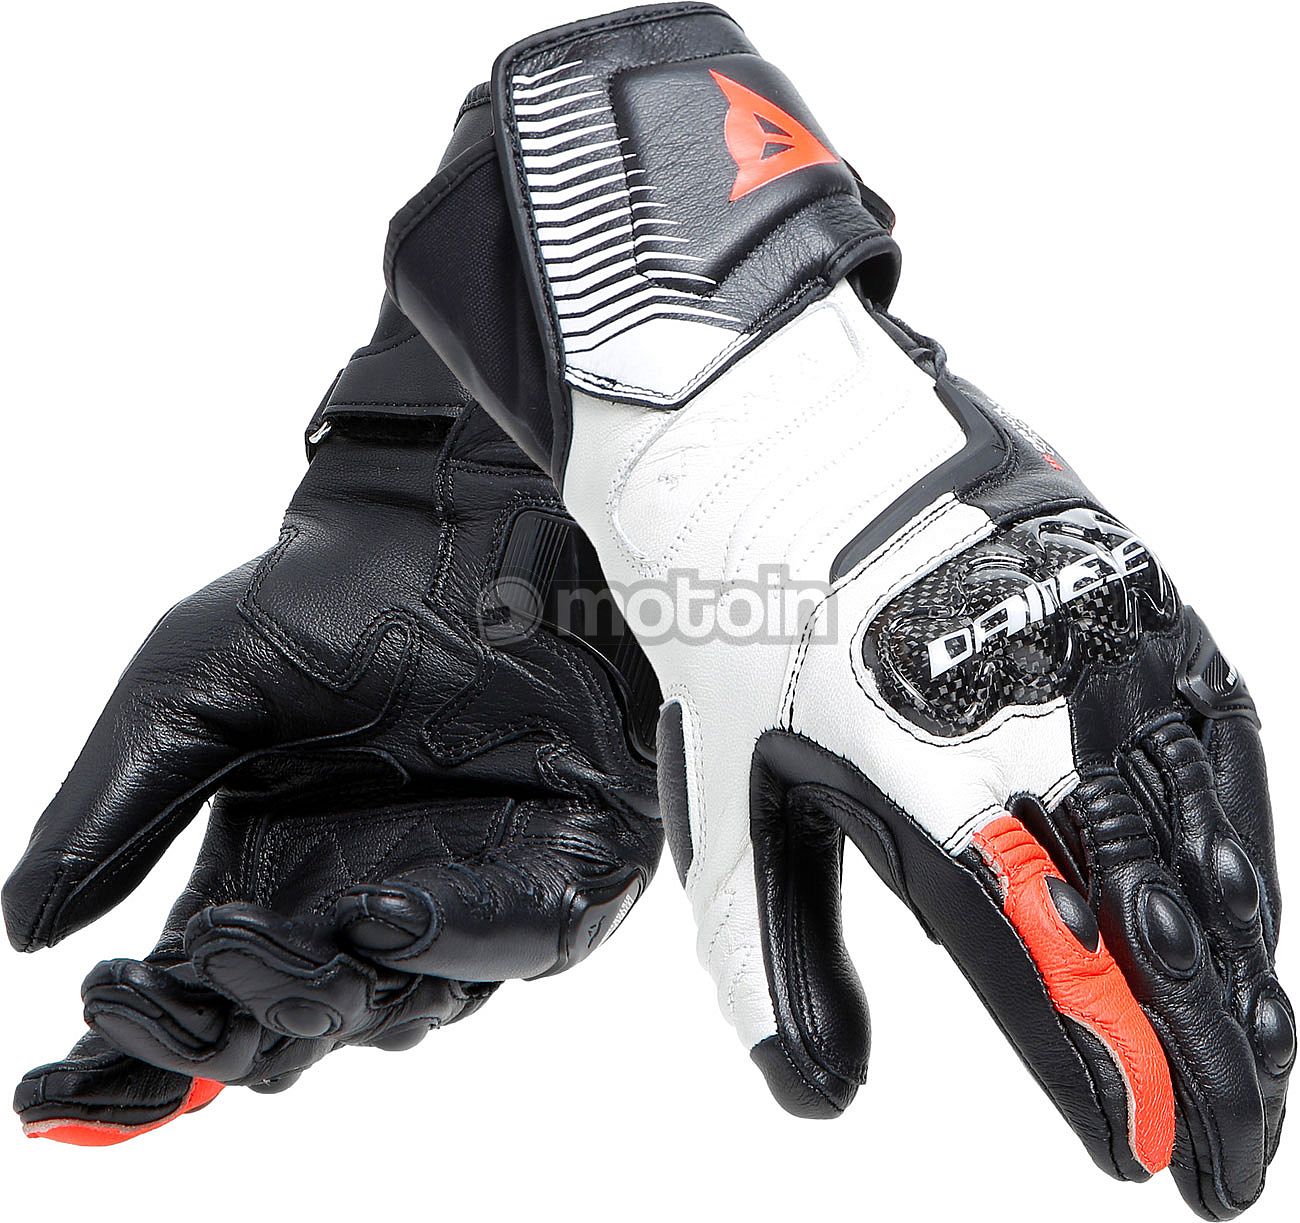 Dainese Carbon 4, handschoenen lang vrouwen